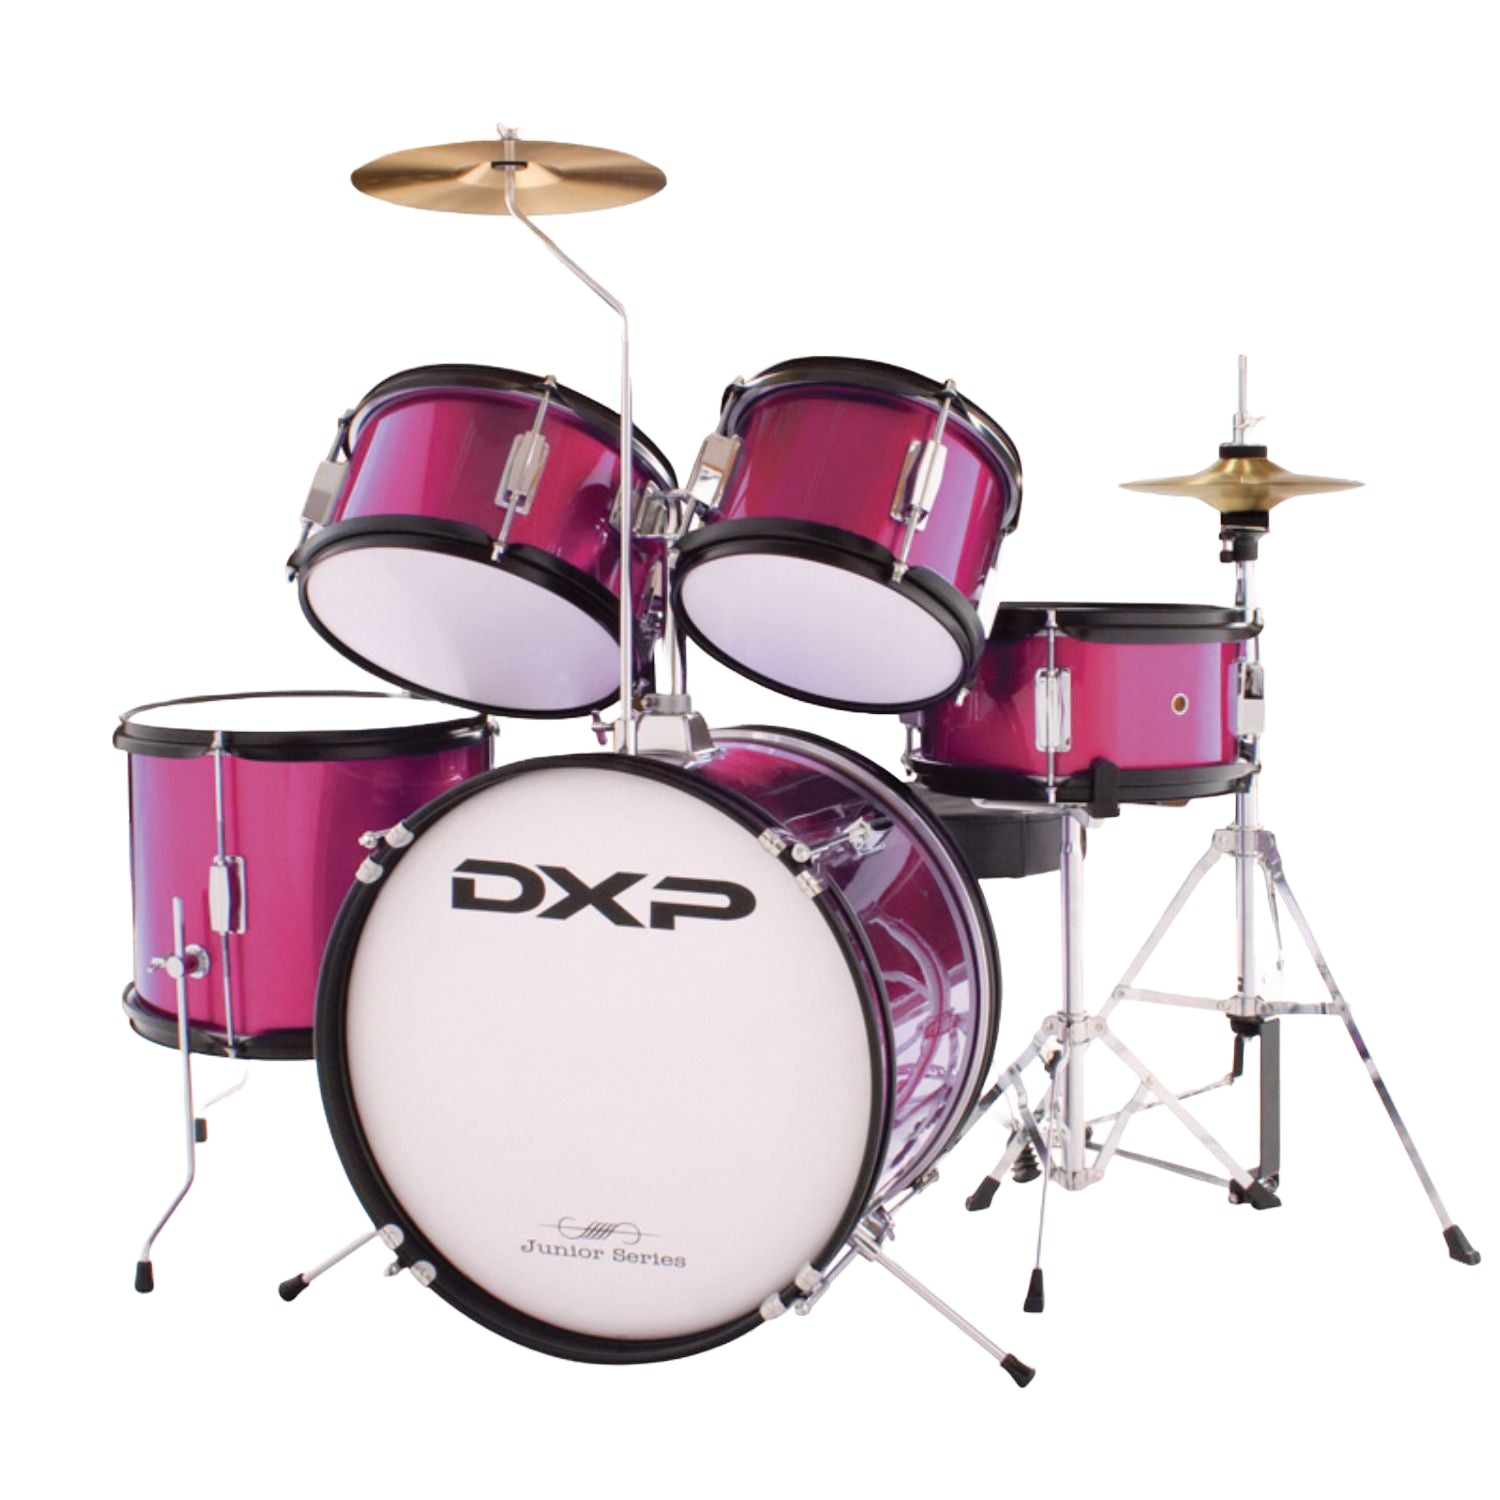 DXP 5-Piece Junior Drum Kit